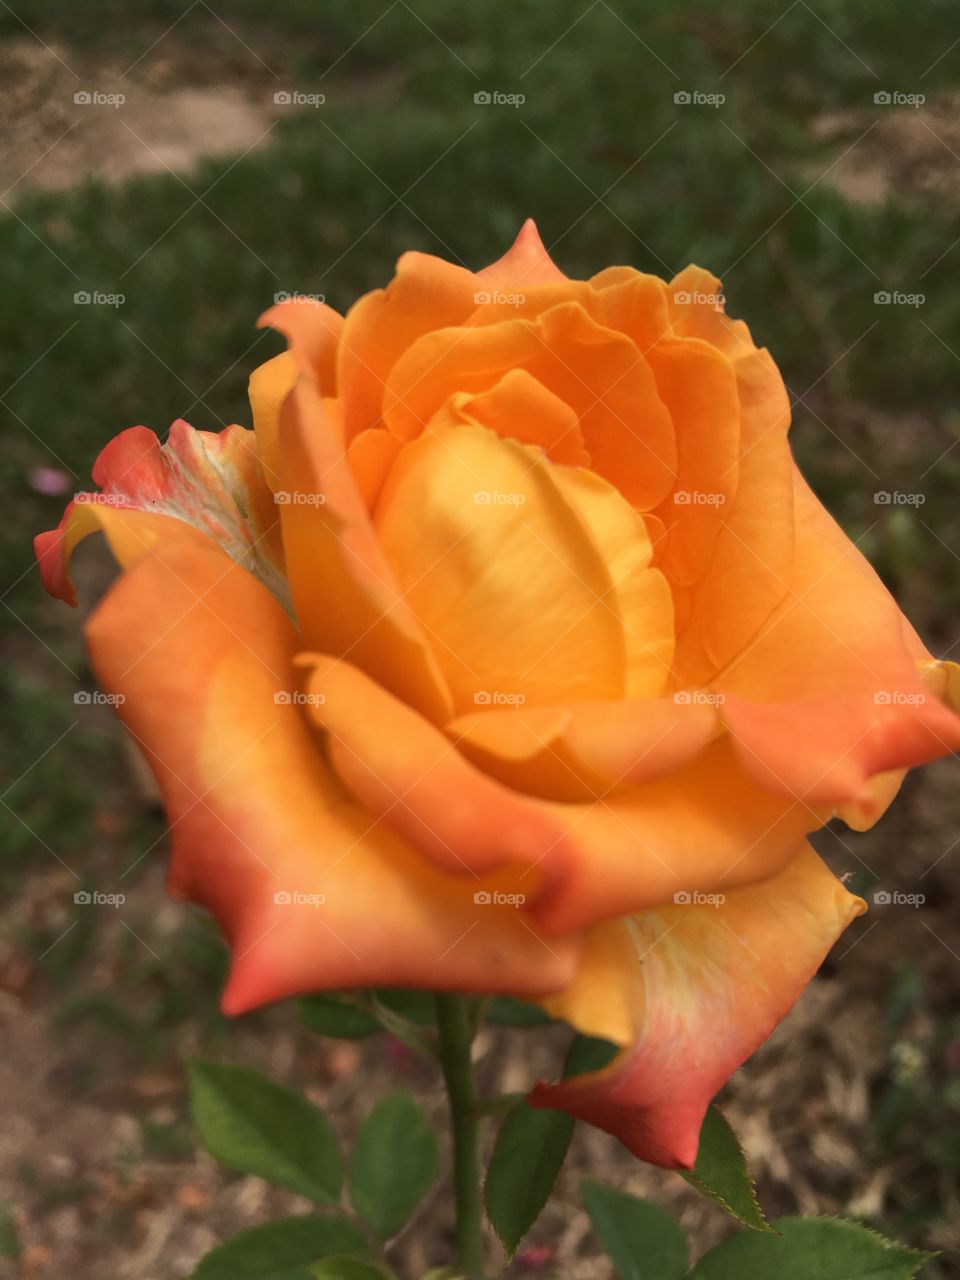 🌼Fim de #atividade física - parte 2. 
Suado, cansado e feliz, curtindo a beleza das #rosas laranjas.
🏁
#corrida #treino #flor #flowers #flores #pétalas #jardim #jardinagem #garden #flora #run #walking